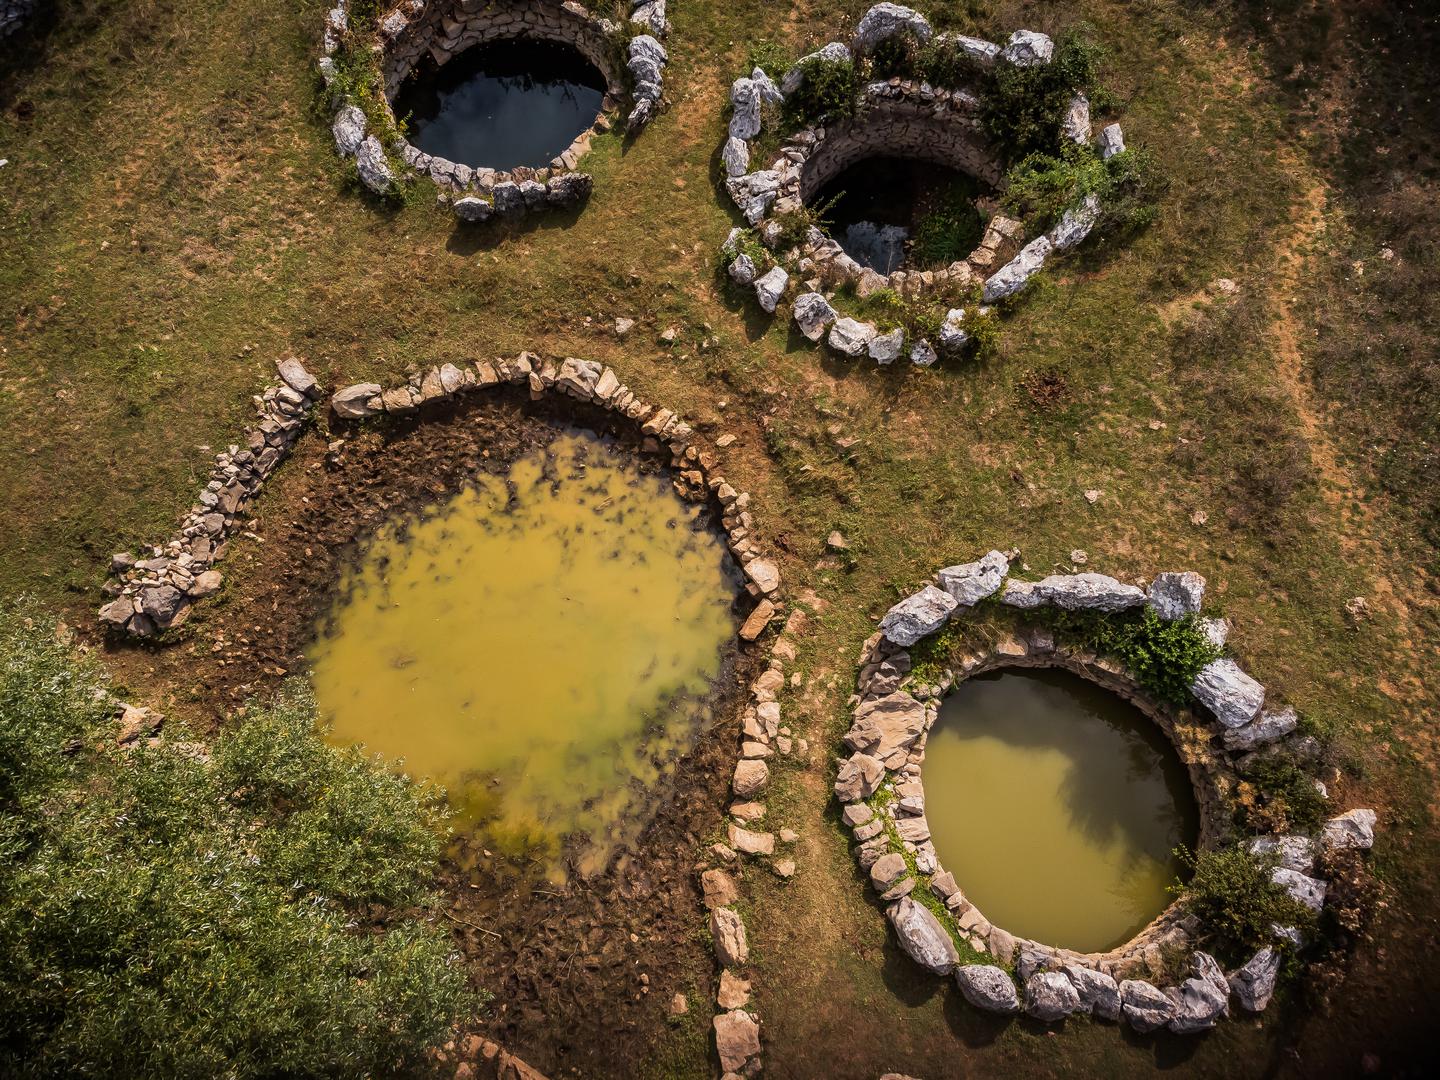 Deset gotovo identičnih bunara okruženih suhozidima oduševljavaju svojom ljepotom i intrigiraju svojom tajanstvenom poviješću. 